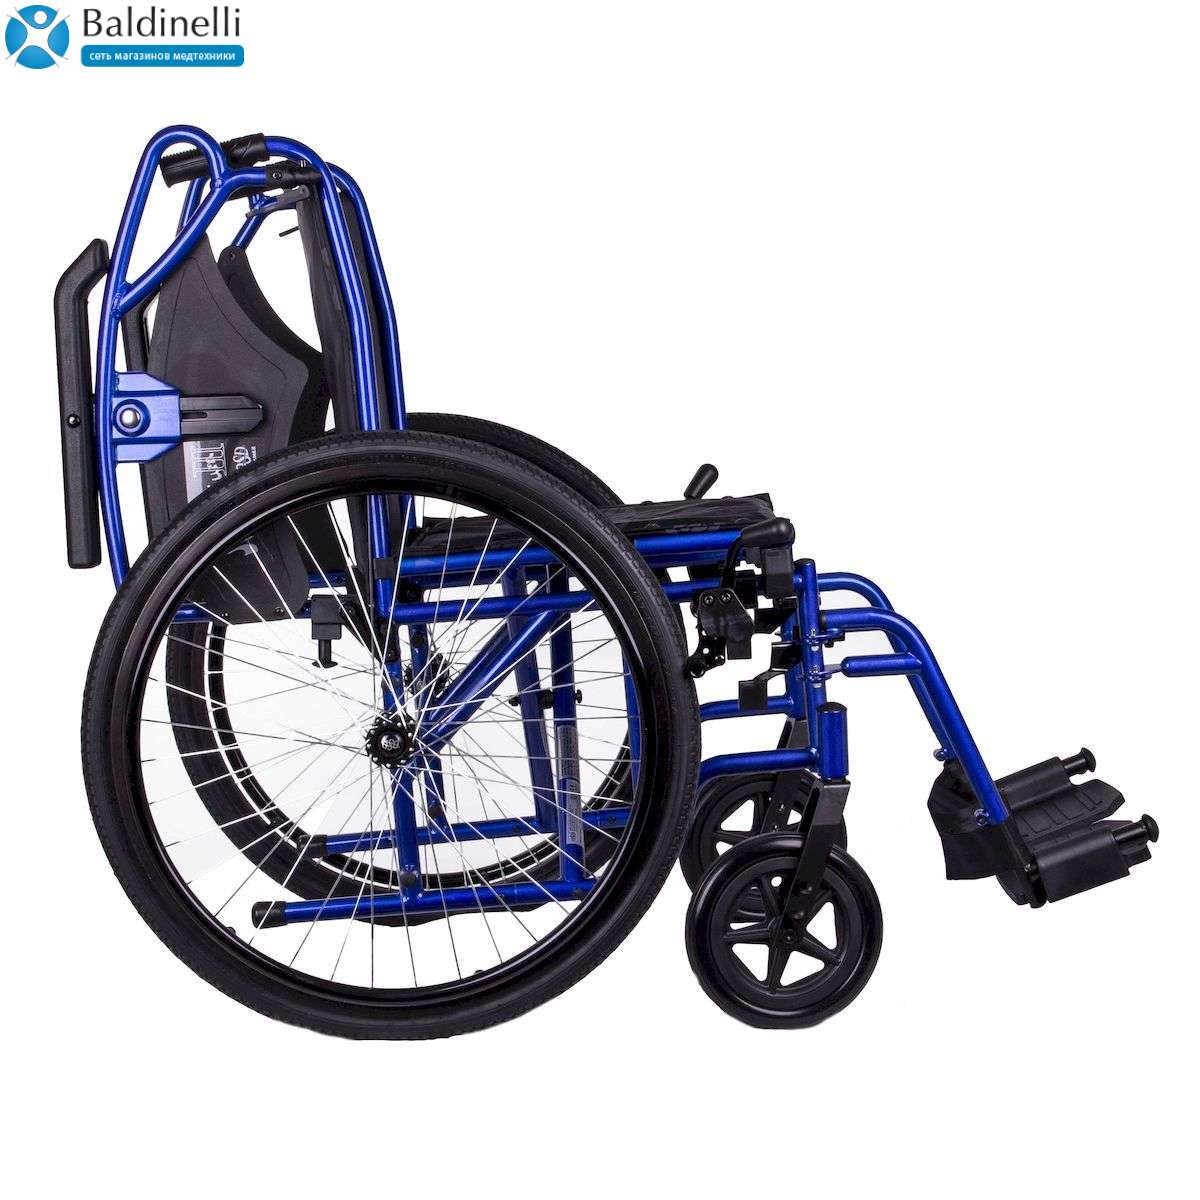 Стандартний інвалідний візок із санітарним оснащенням OSD Millenium 4 Blue OSD-STB4-**+OSD-STD-WC